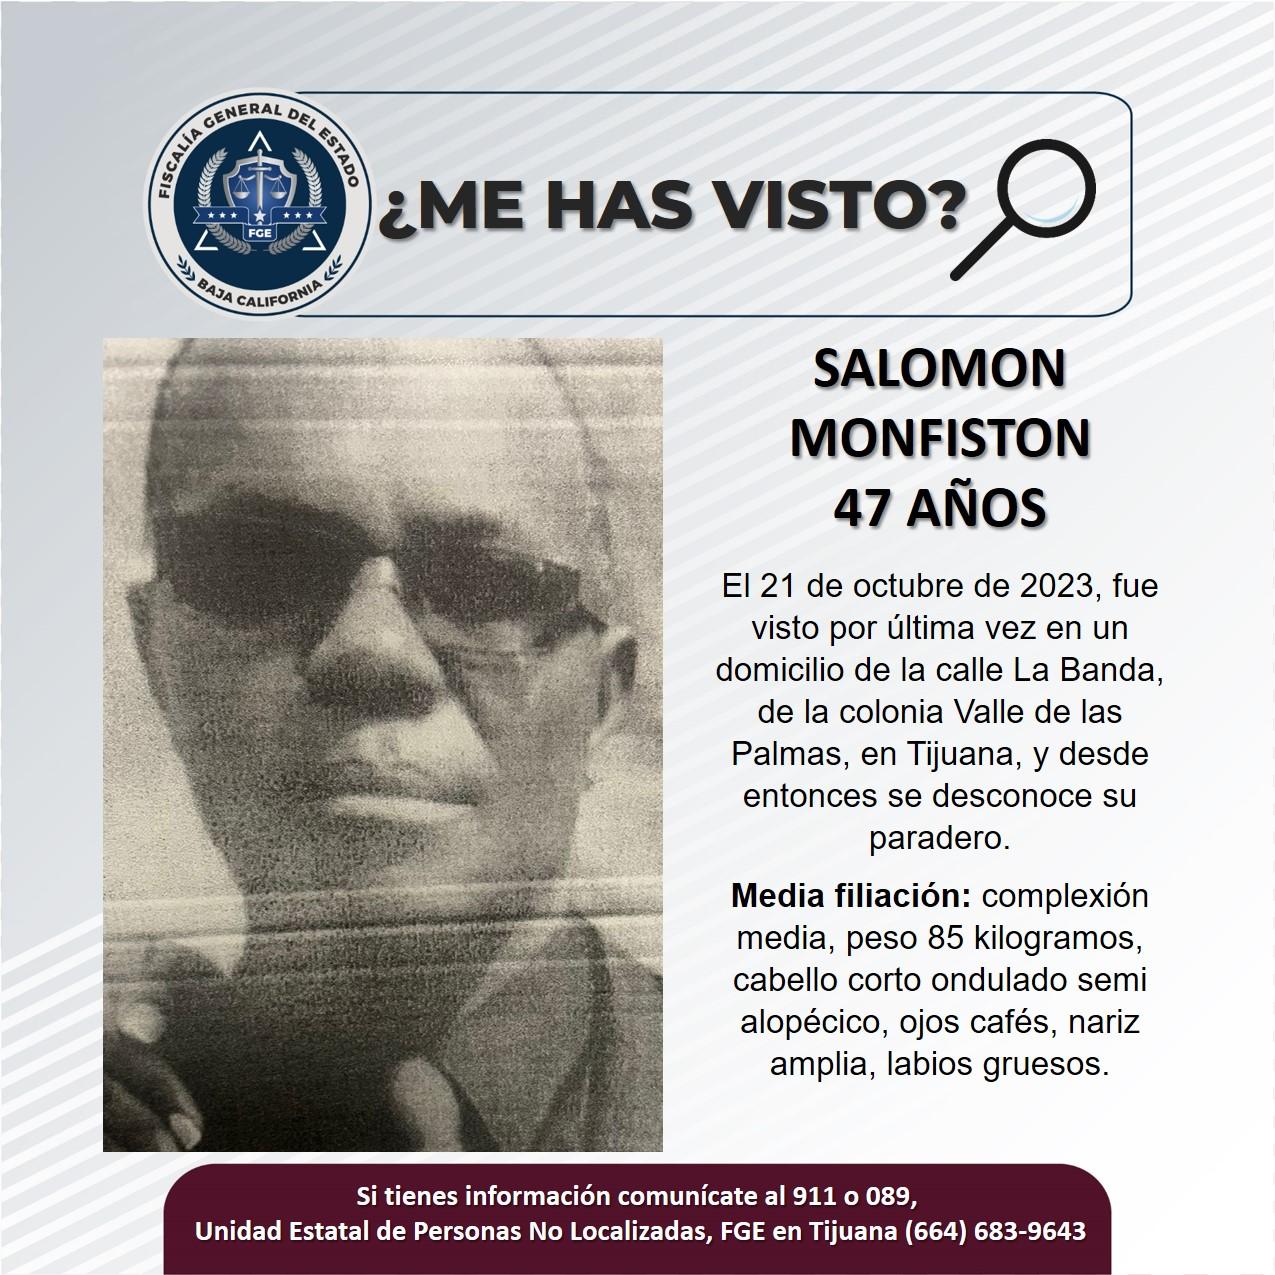 Servicio social: Se busca a Salomon Monfiston de 47 años de edad